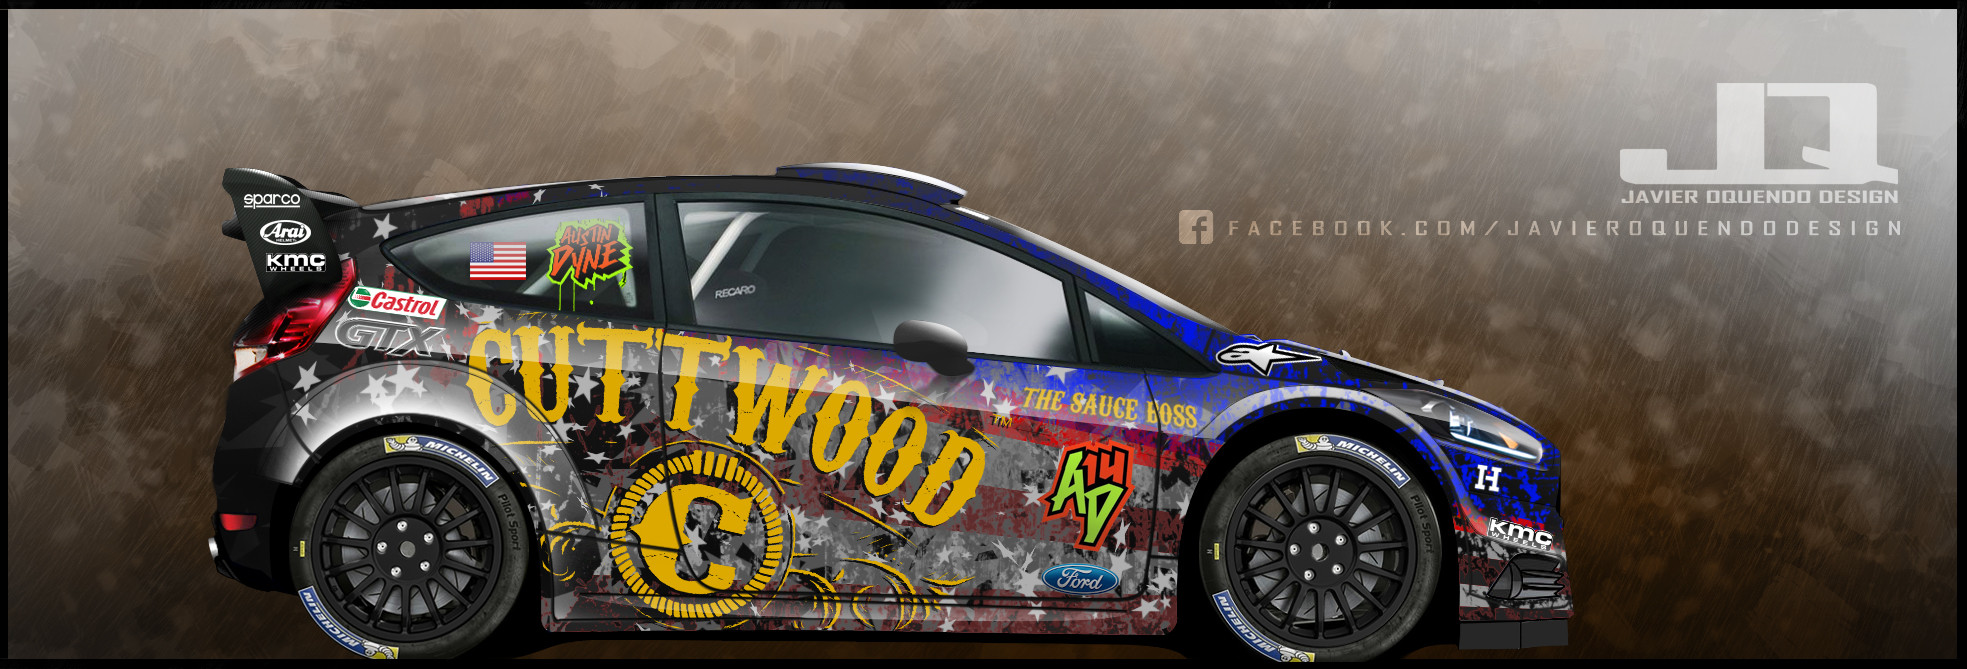 Austin Dyne - Cuttwood Racing